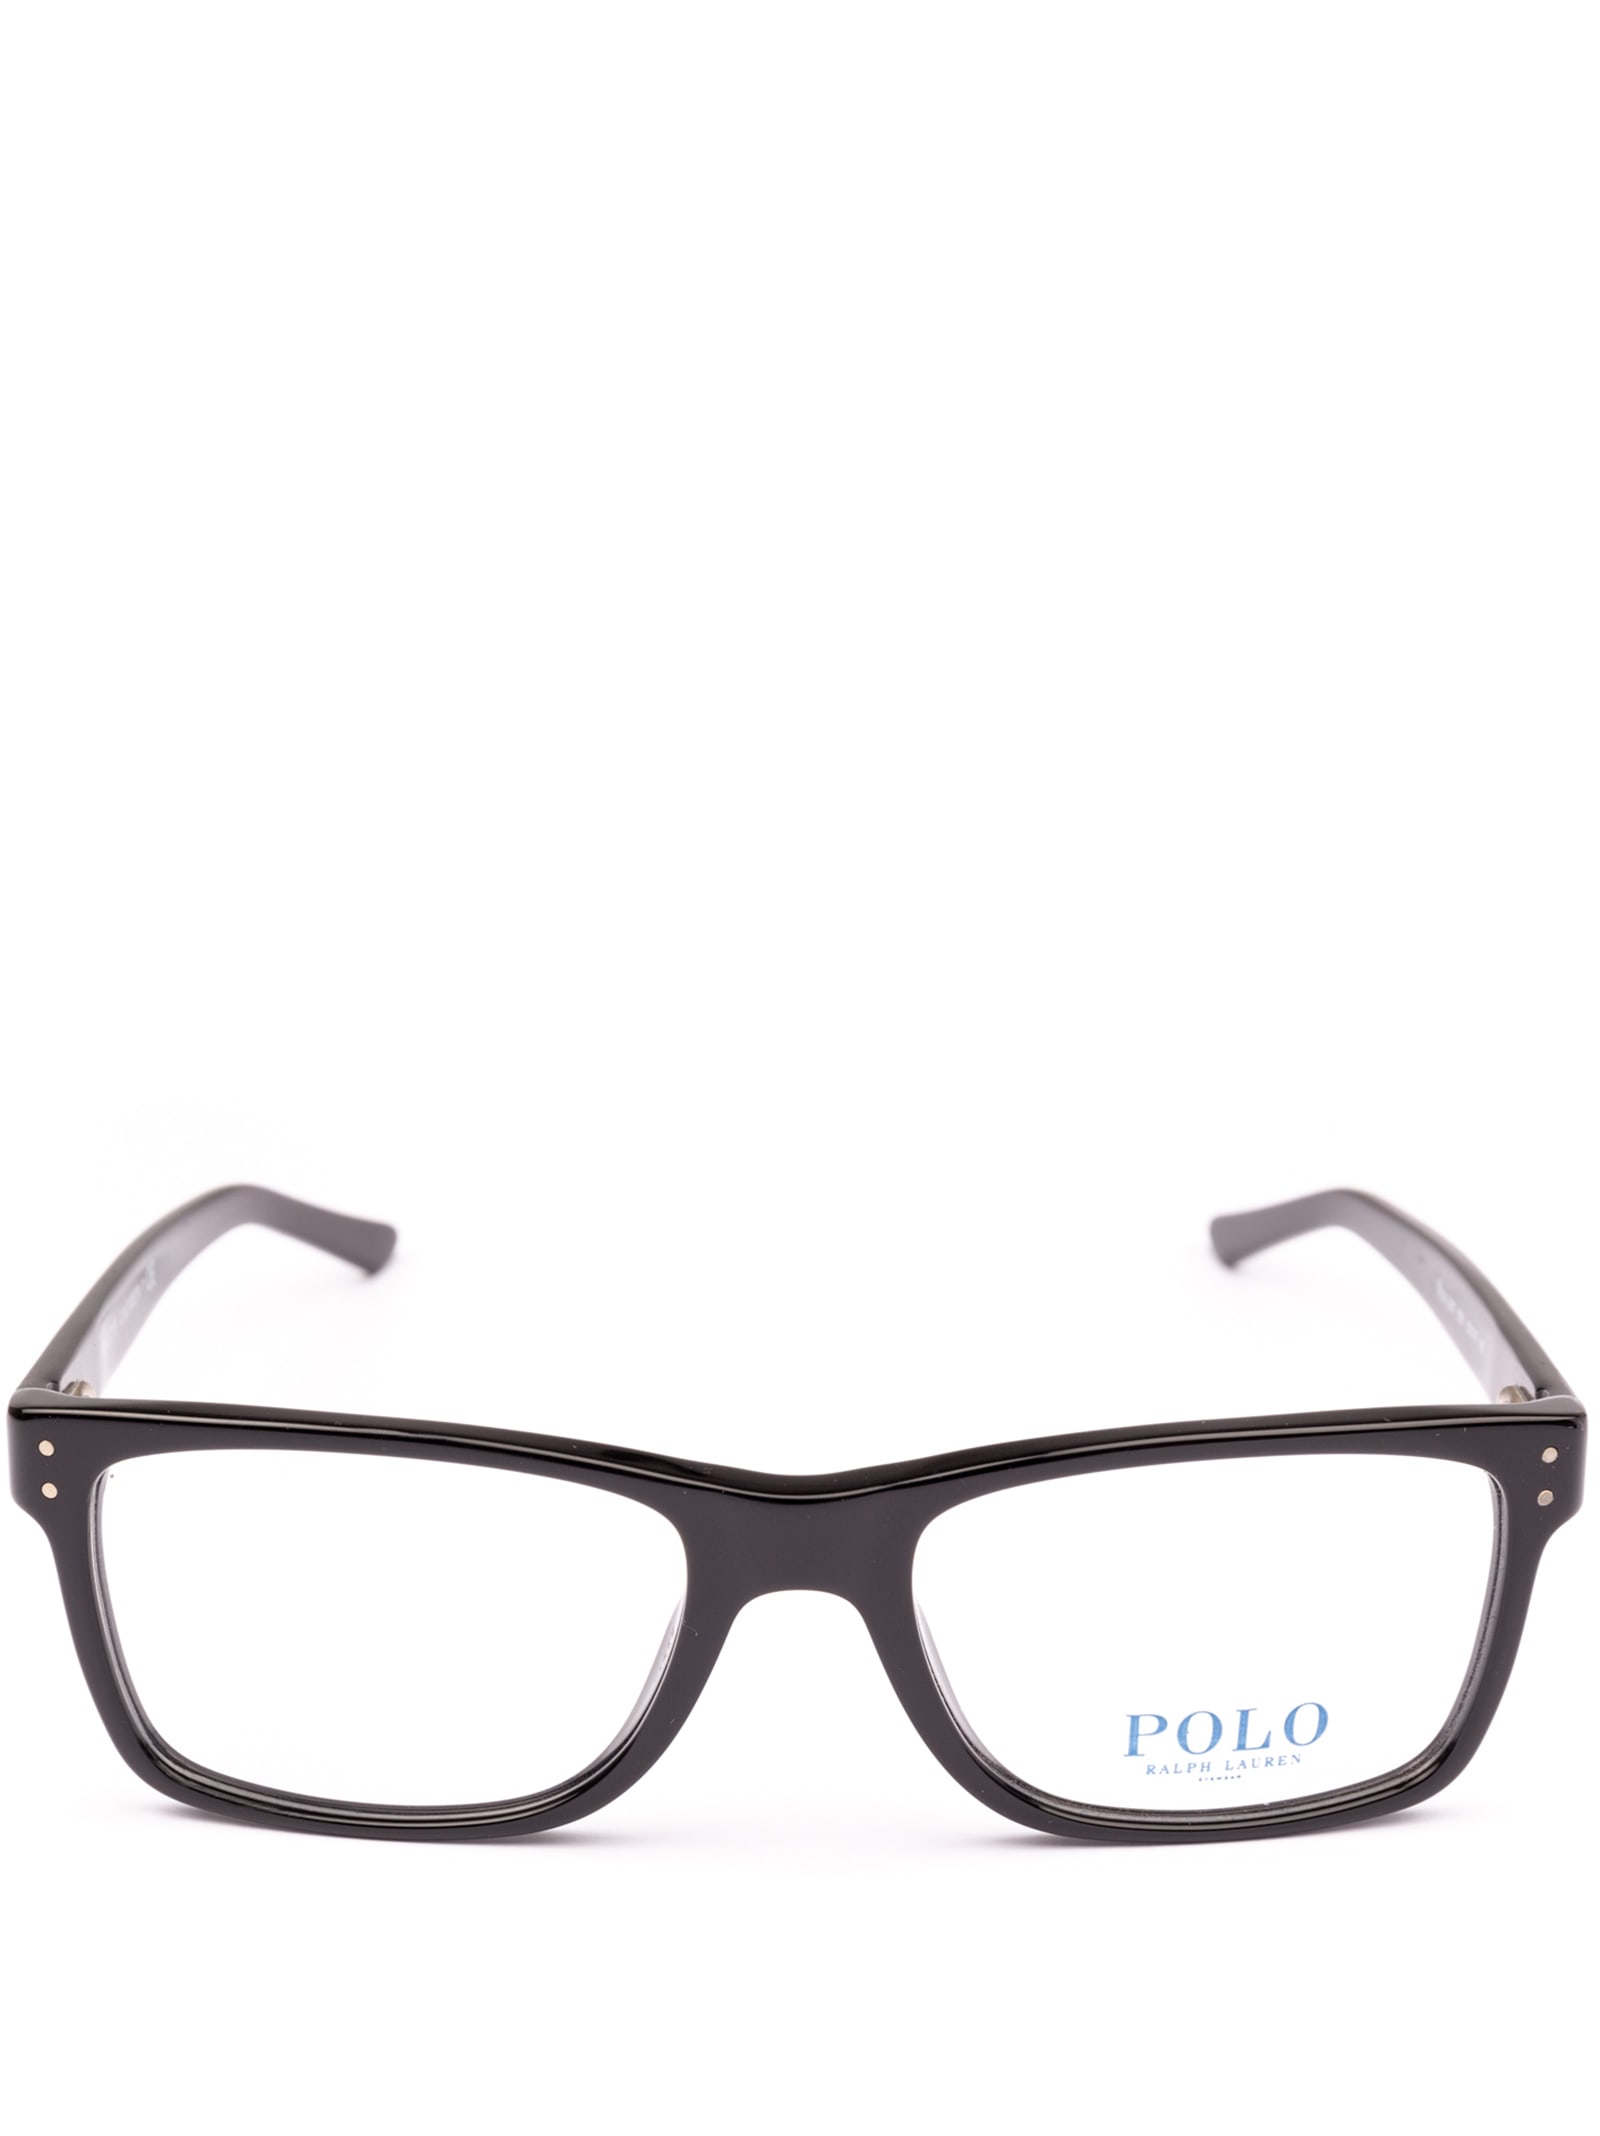 Polo Ralph Lauren Ph2057 5001 Glasses